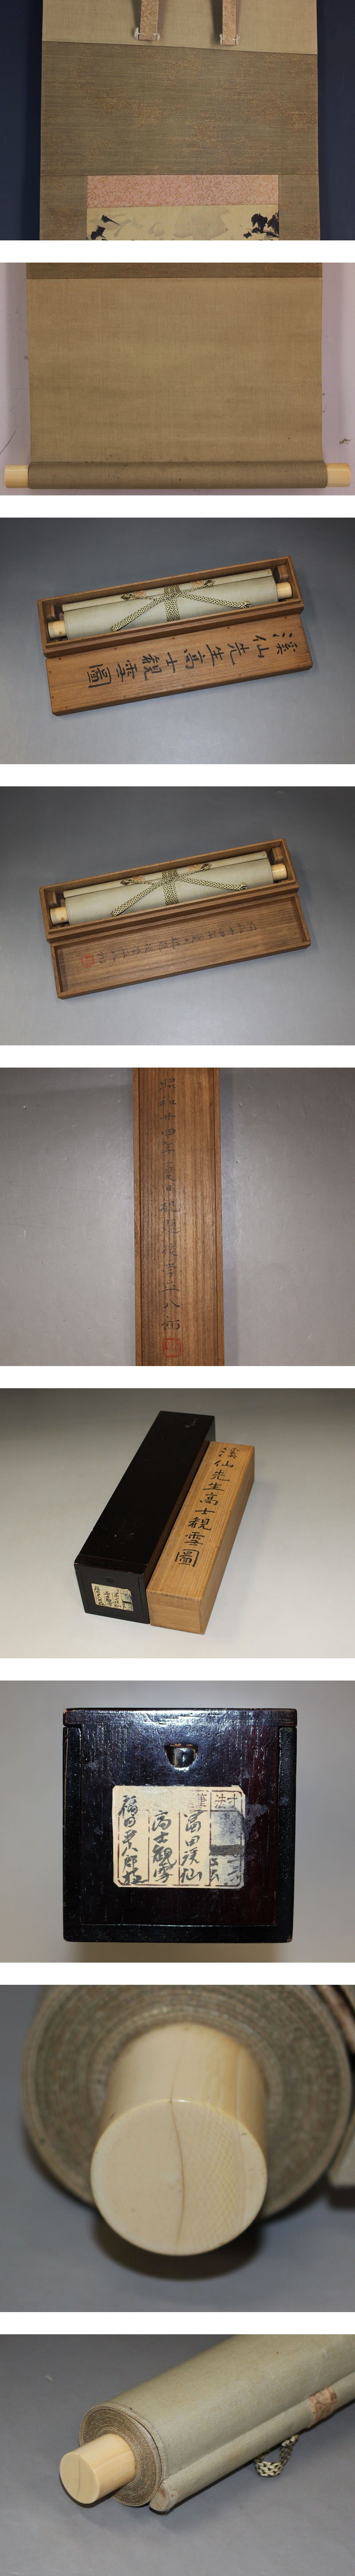 簡単購入富田渓仙◆絹本◆平八郎識箱◆二重箱◆掛軸 w01147 人物、菩薩